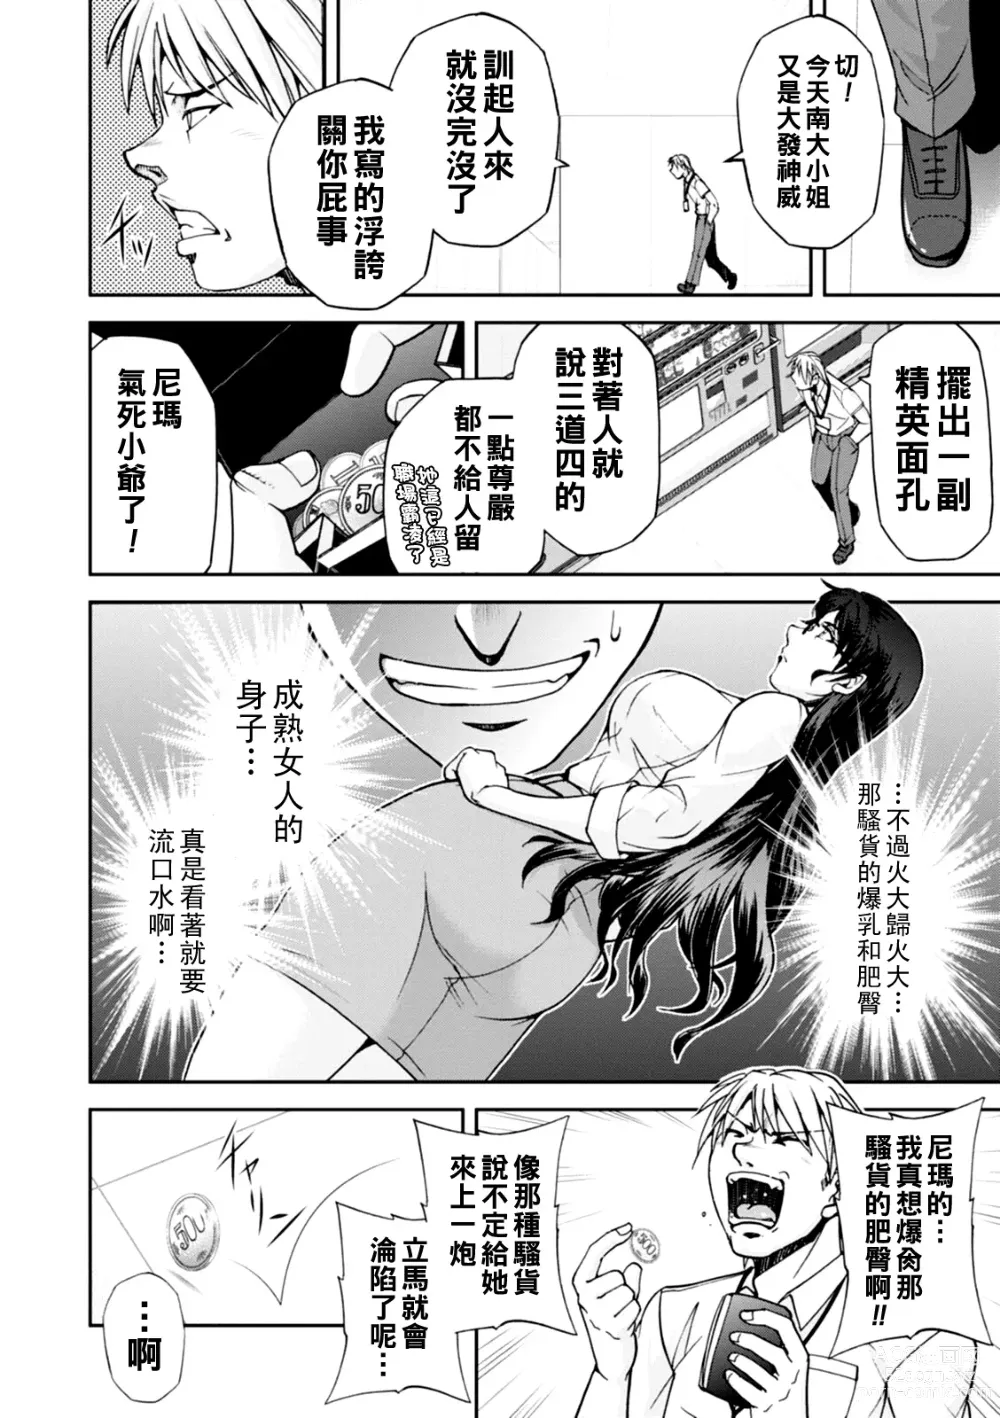 Page 7 of manga Maruhadaka no Minami-san Ch. 1-4